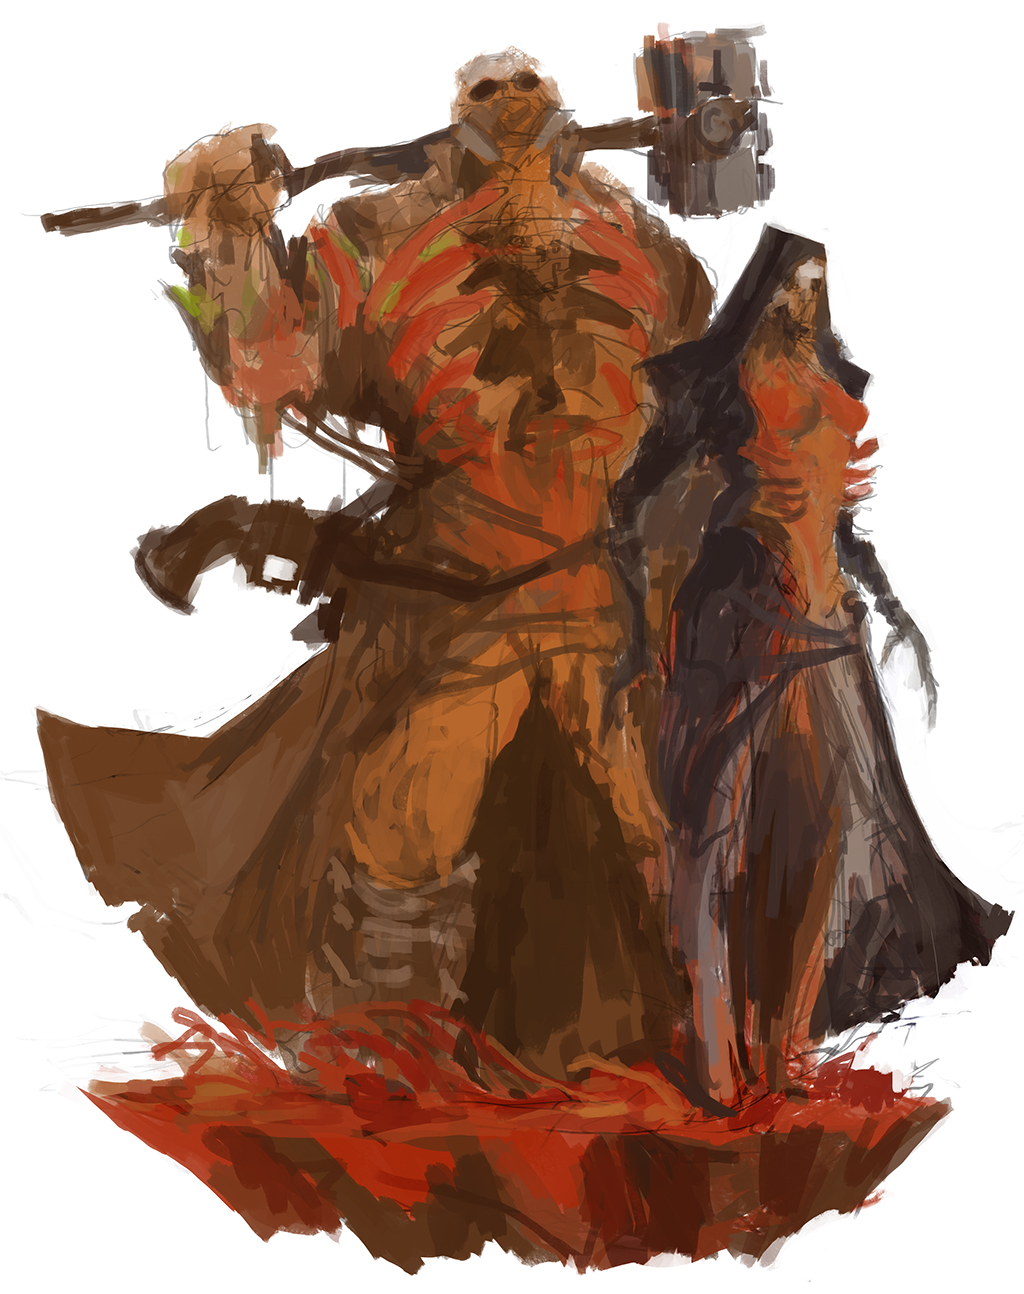 shattered monster mutant concept badass hammer skull death